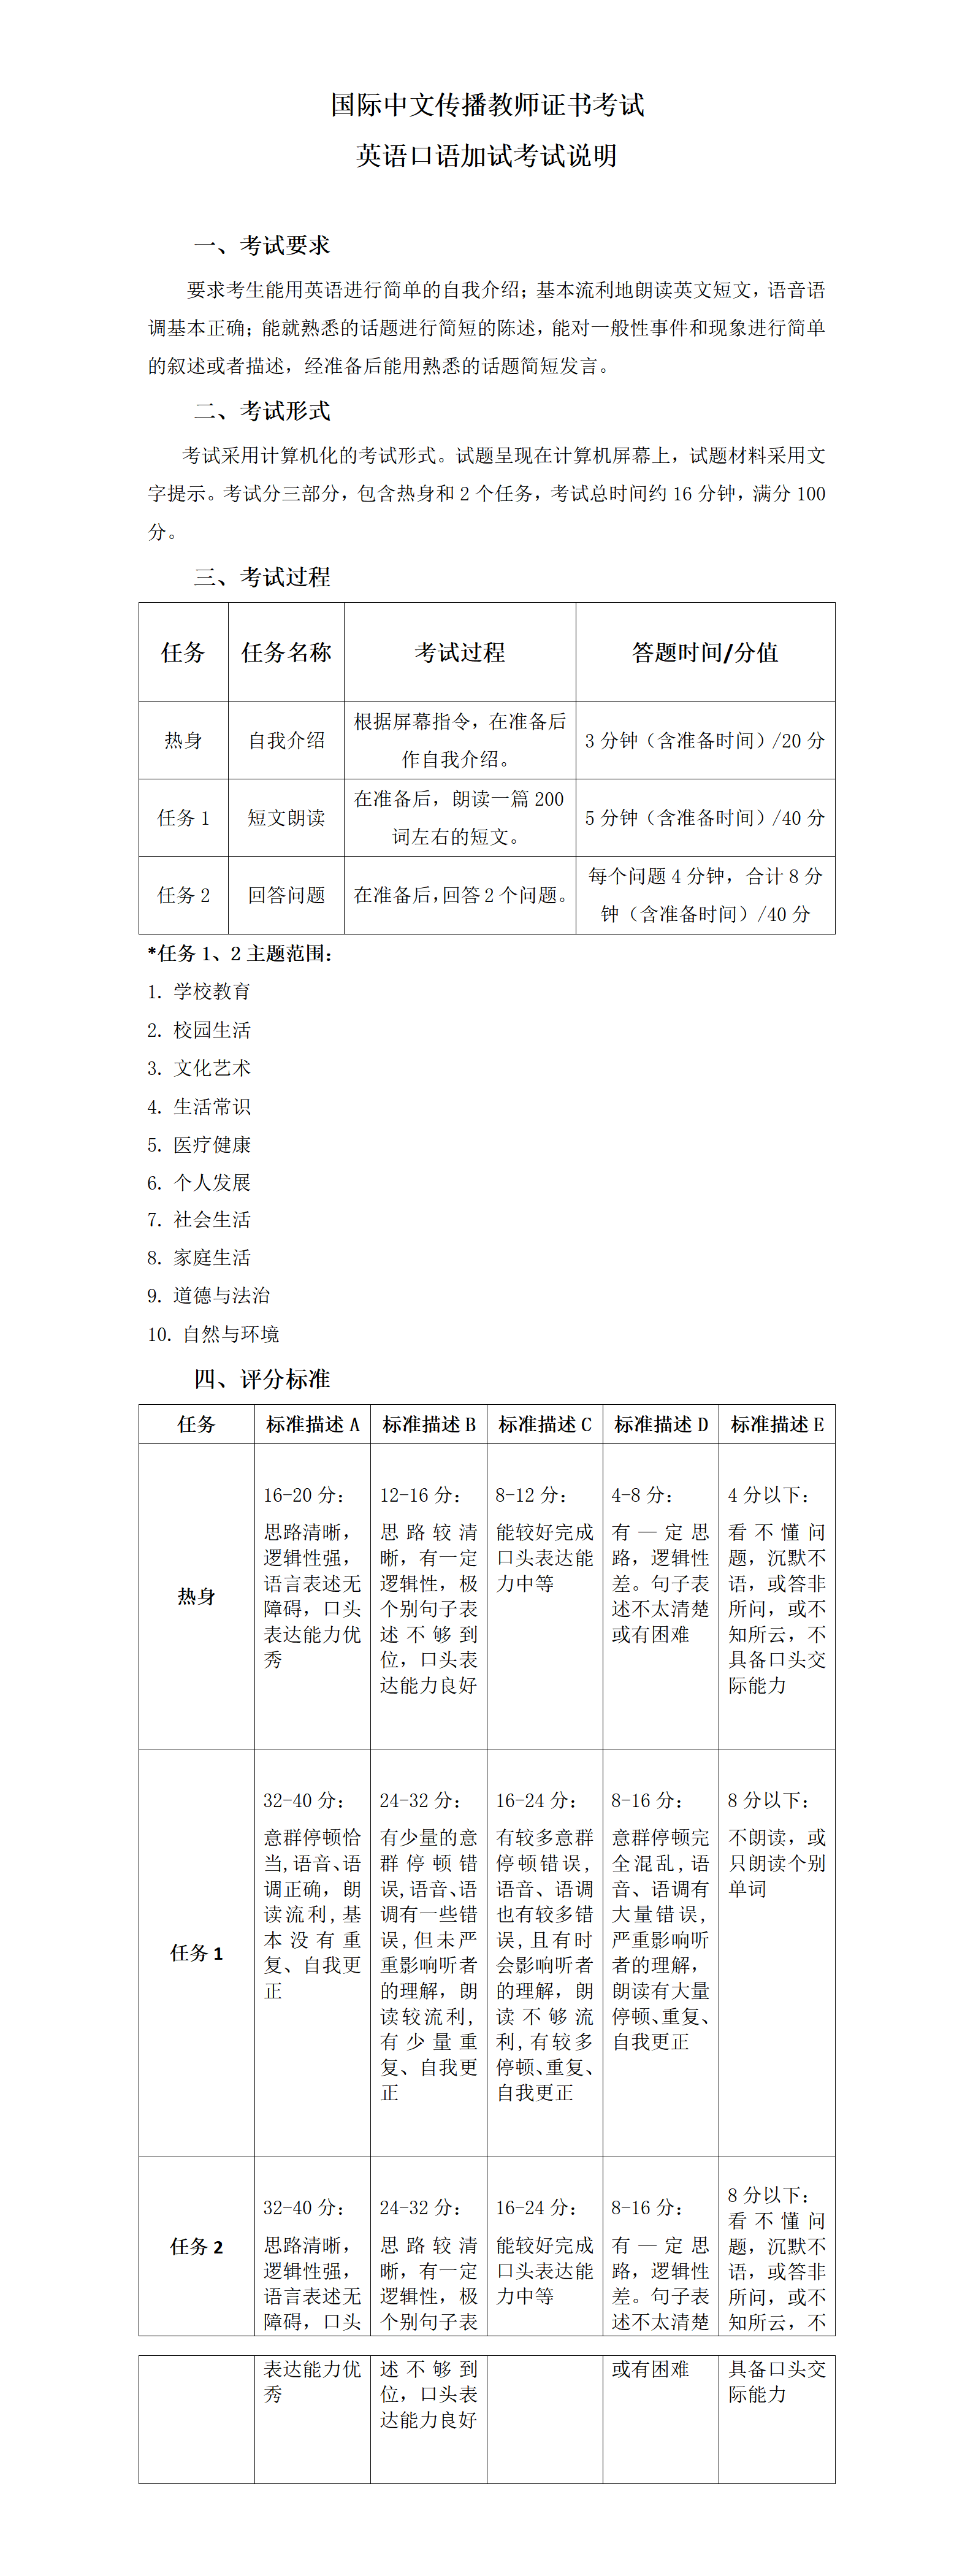 【20220621】国际中文传播教师证书考试英语口语加试考试说明(1)_01